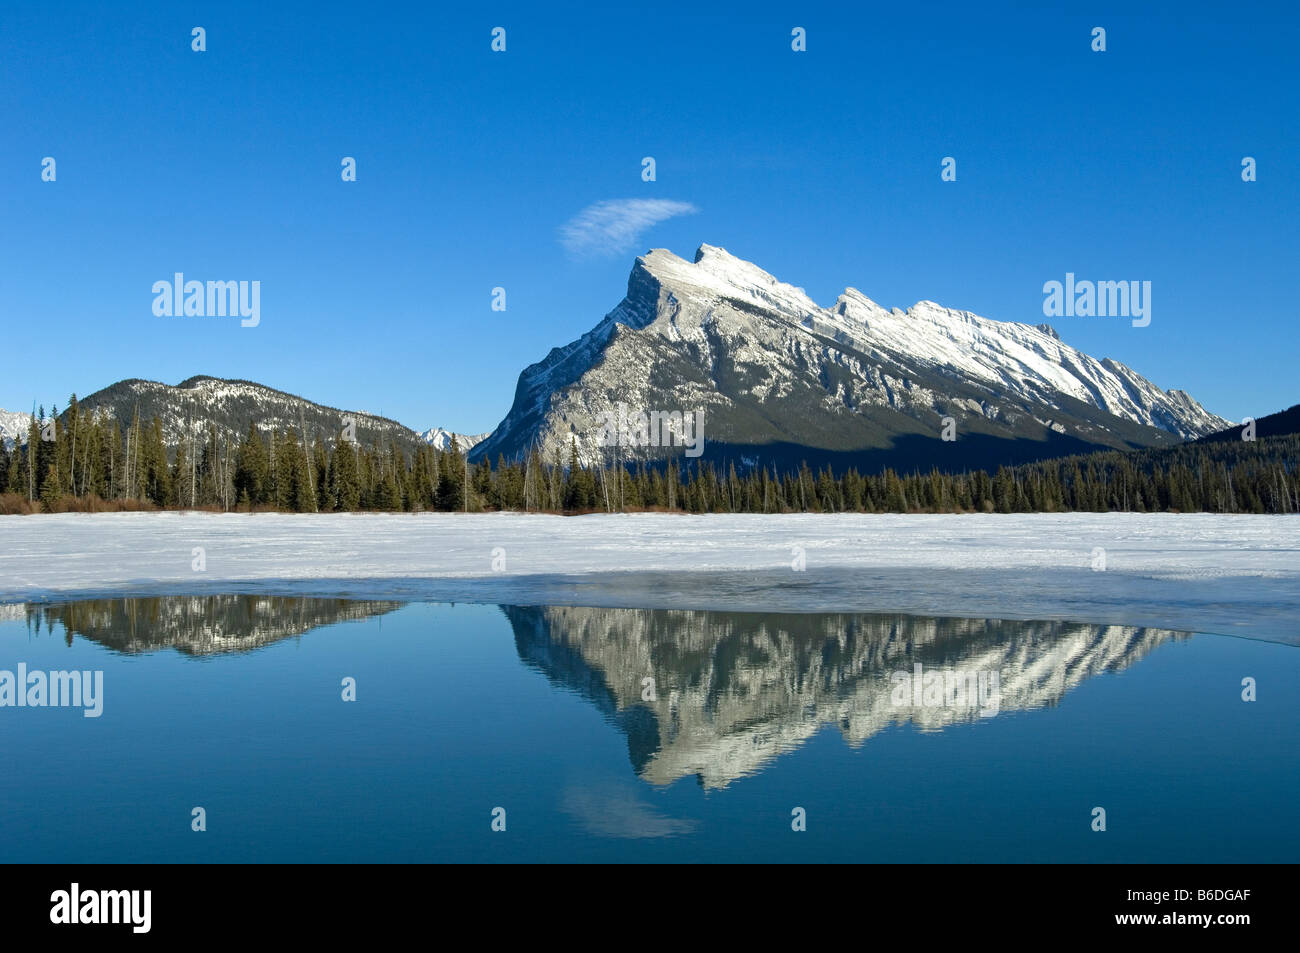 Reflet des montagnes Rocheuses dans les lacs Vermilion, dans le parc national Banff Alberta Canada Banque D'Images